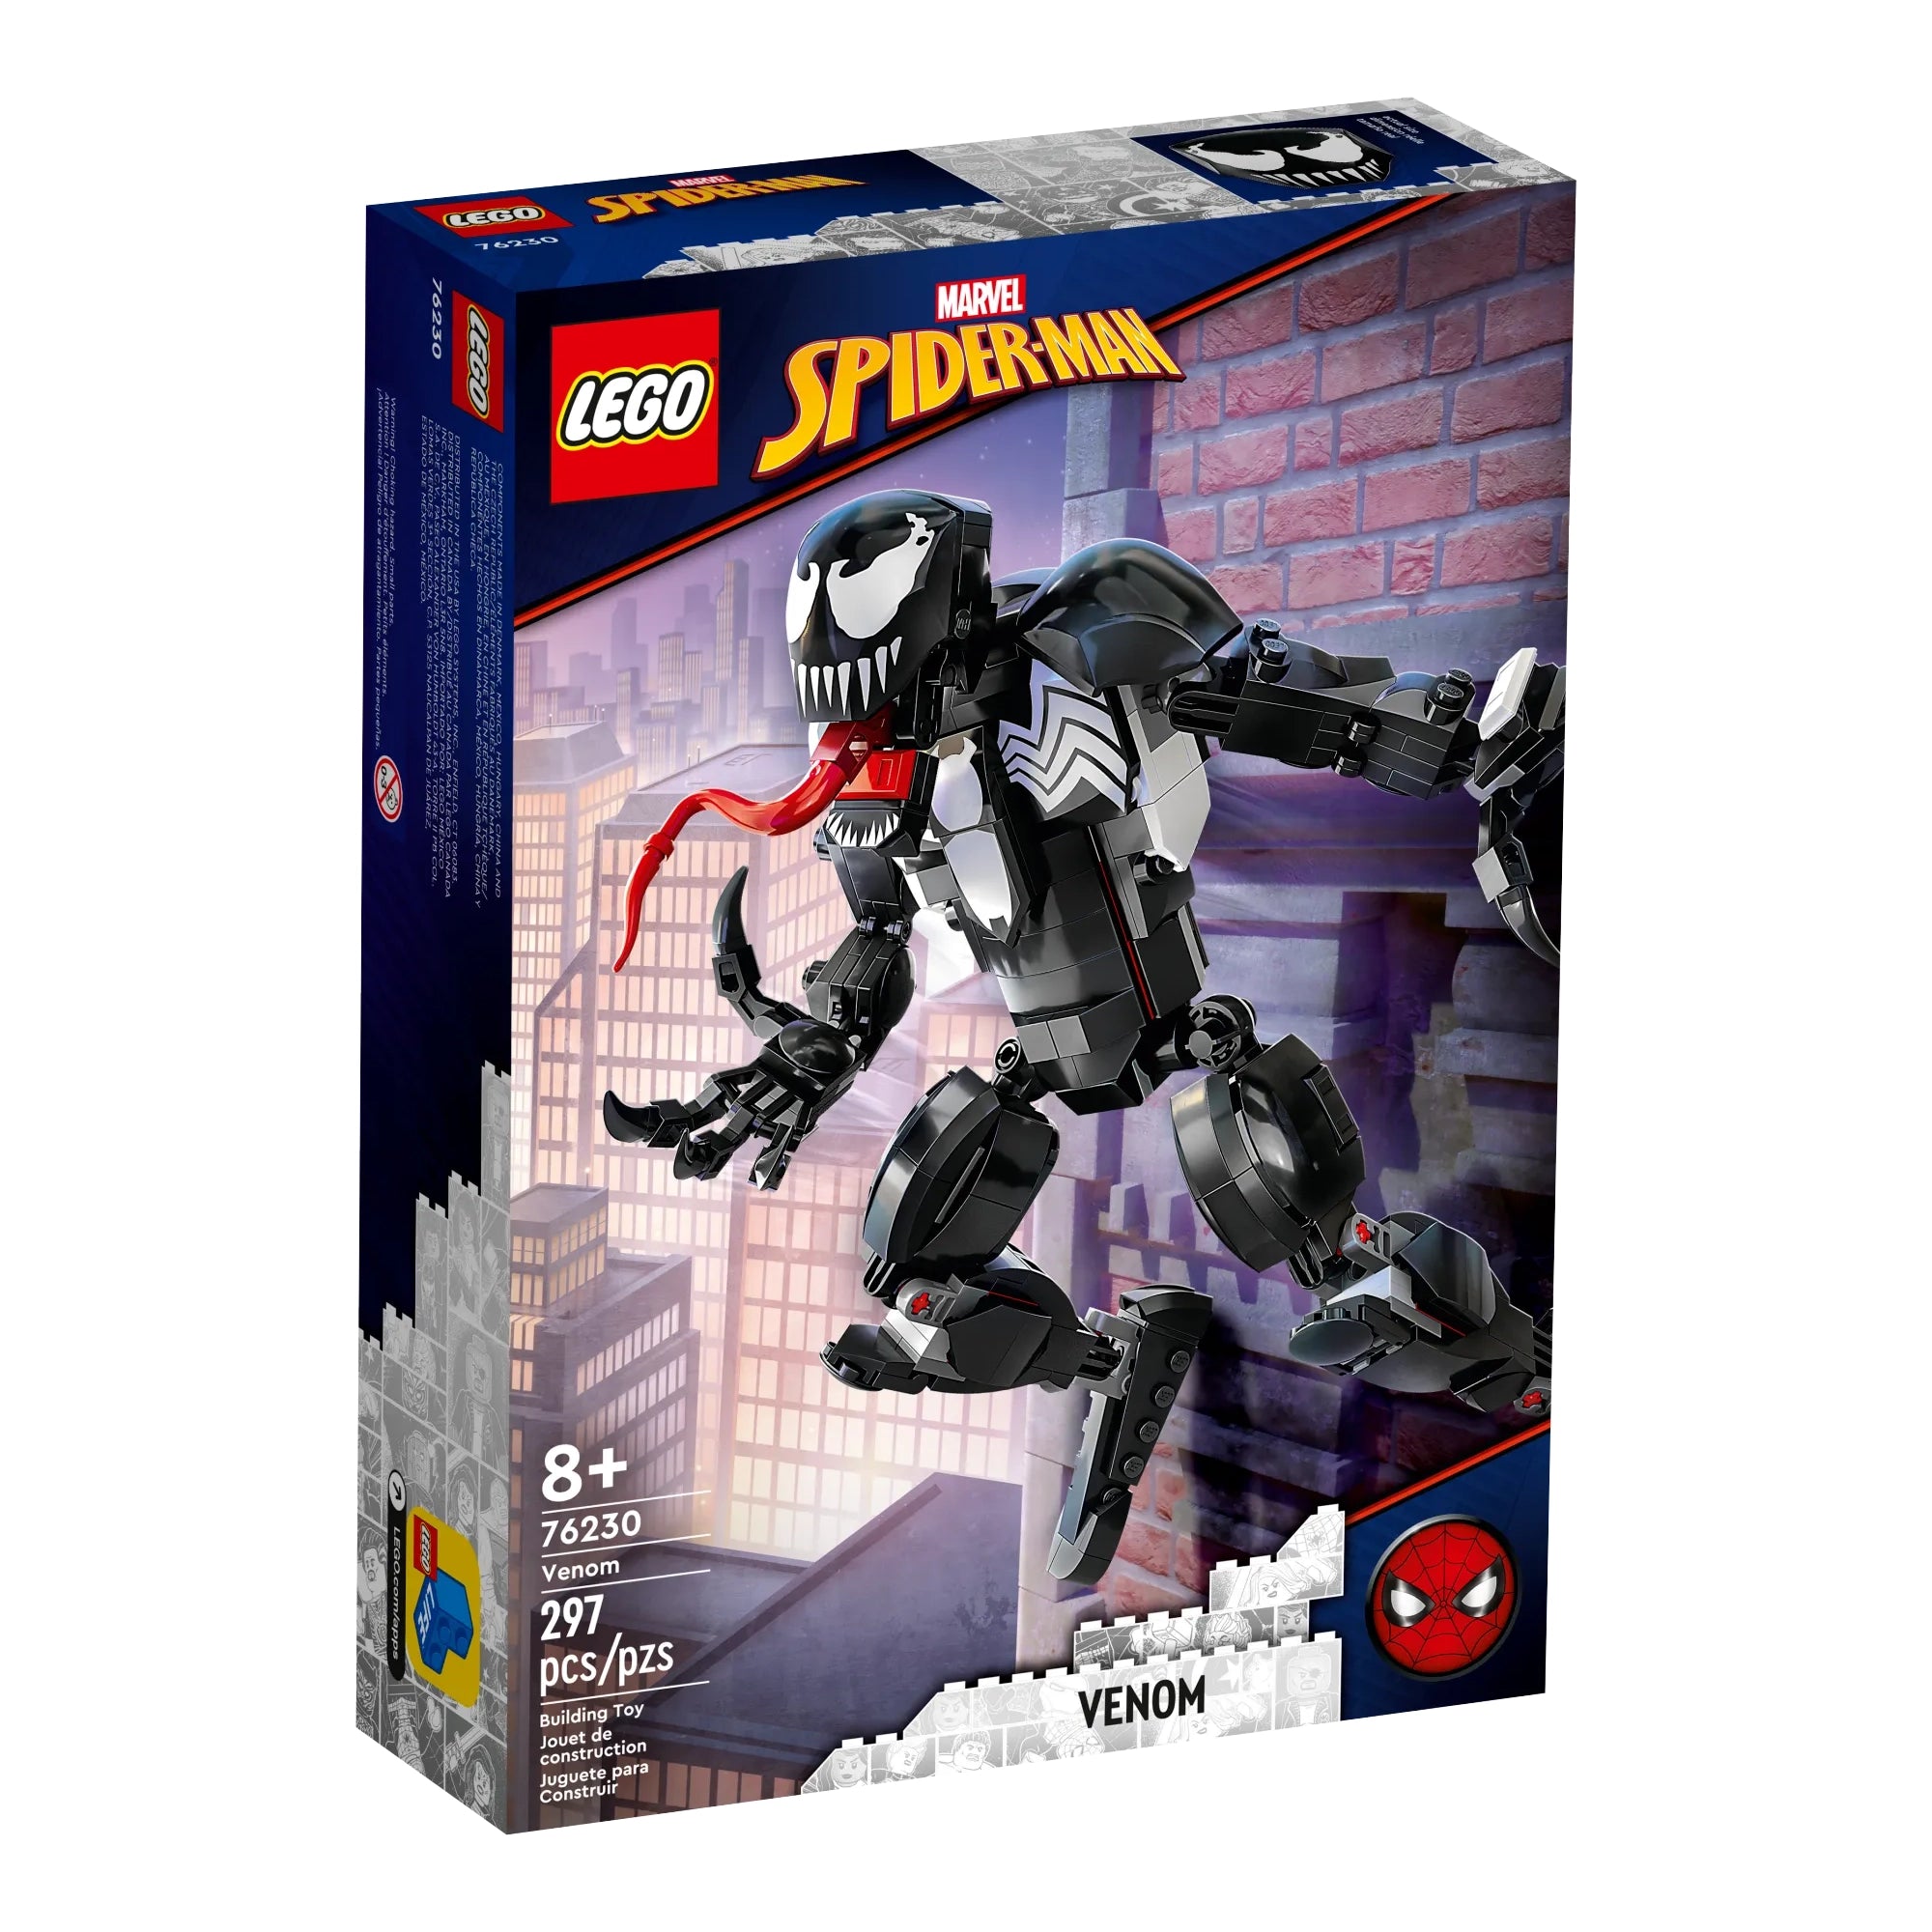 LEGO® Marvel Venom Figure Collectible Toy | 76230